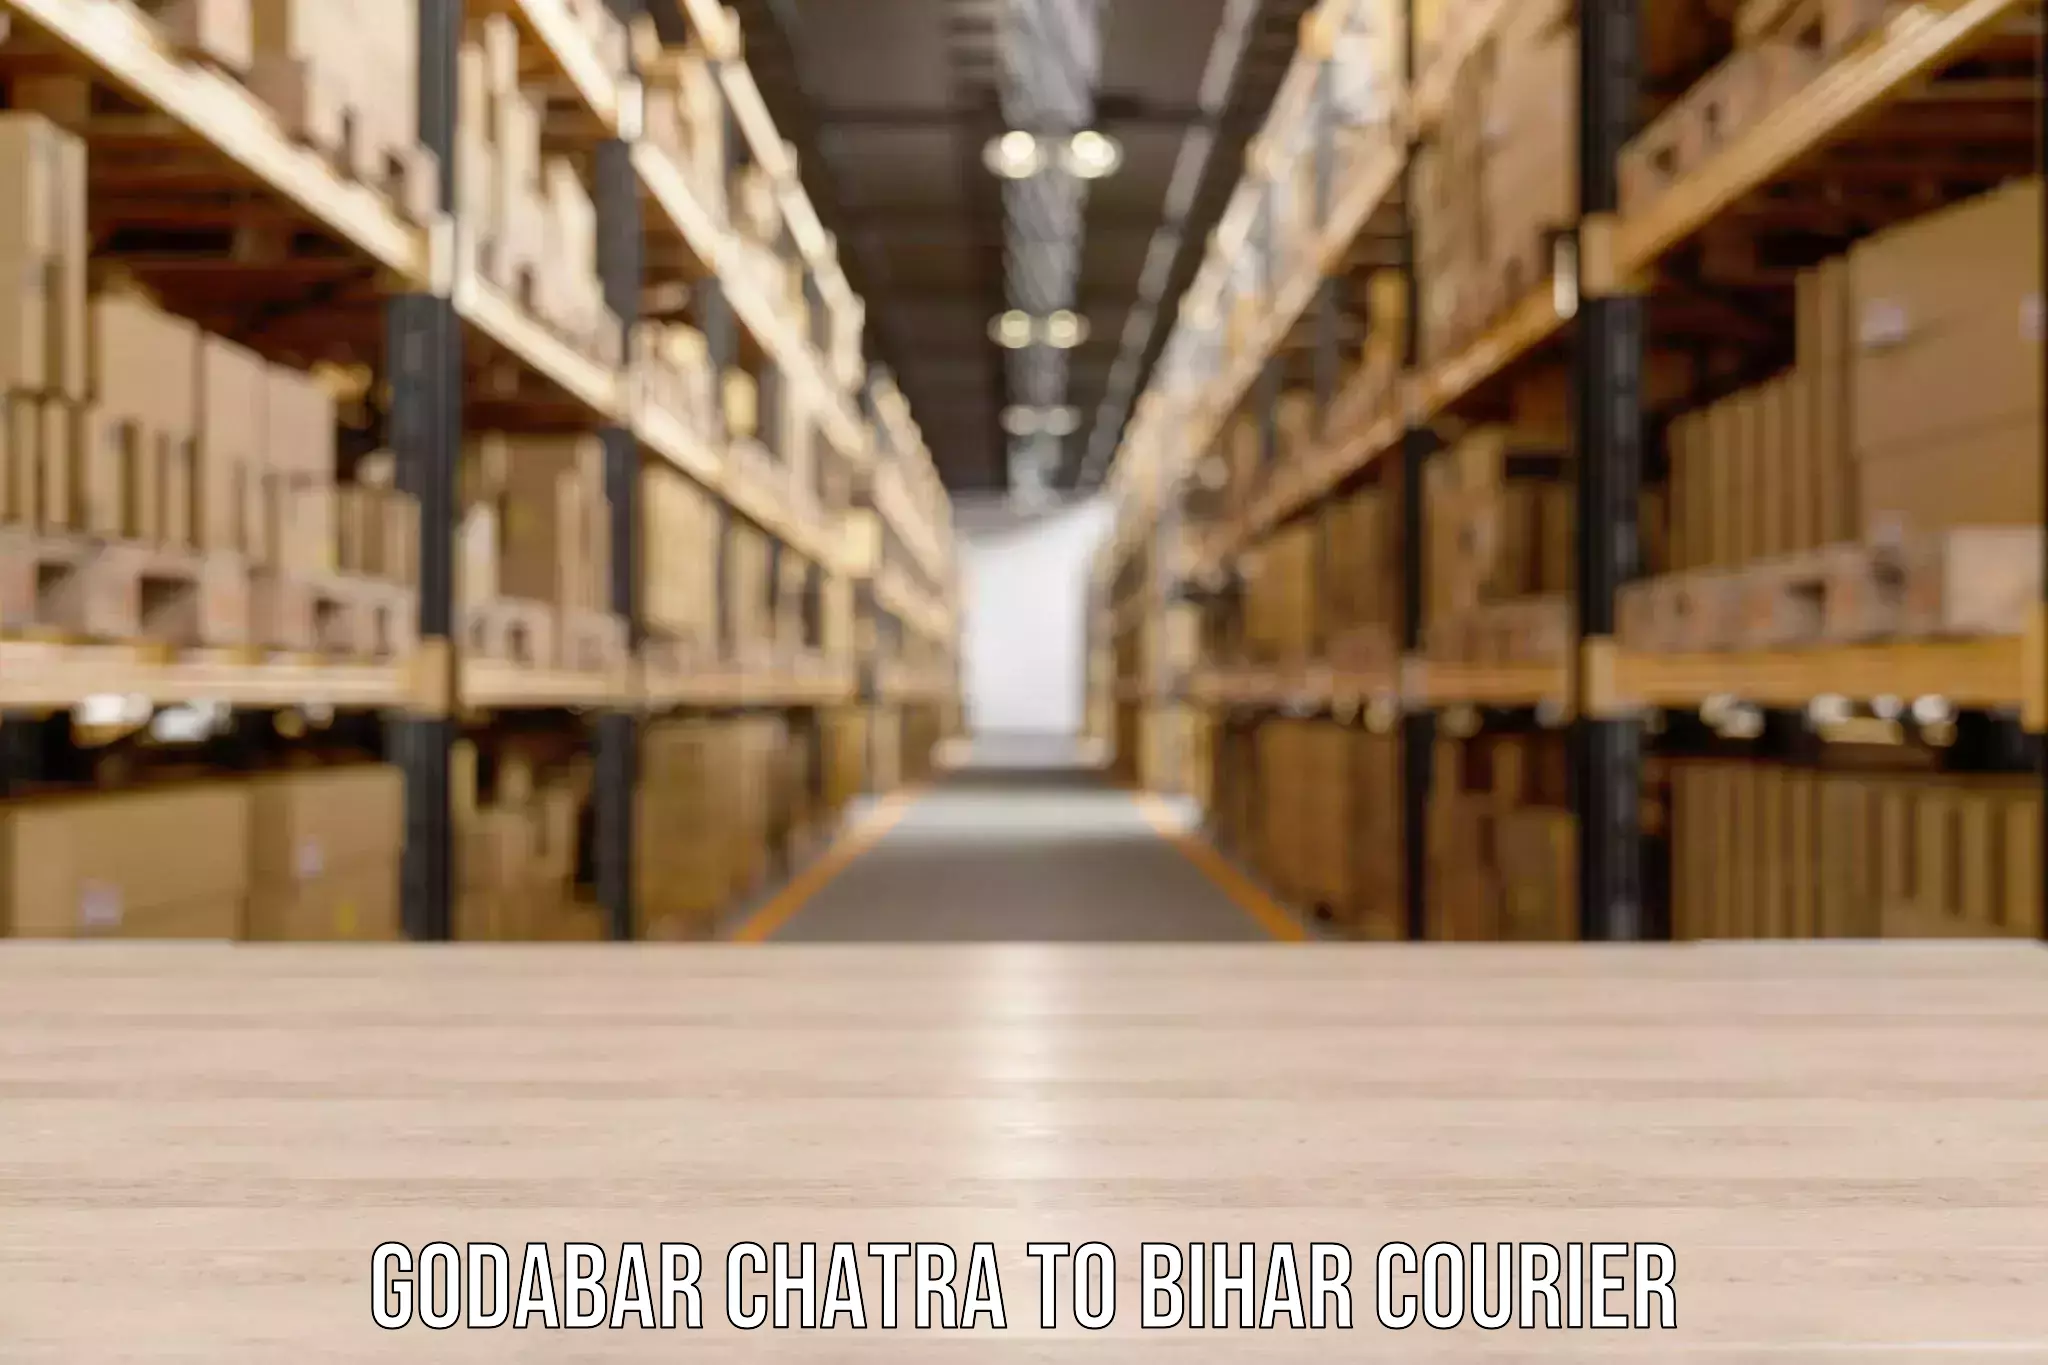 Luggage shipment processing Godabar Chatra to Bihar